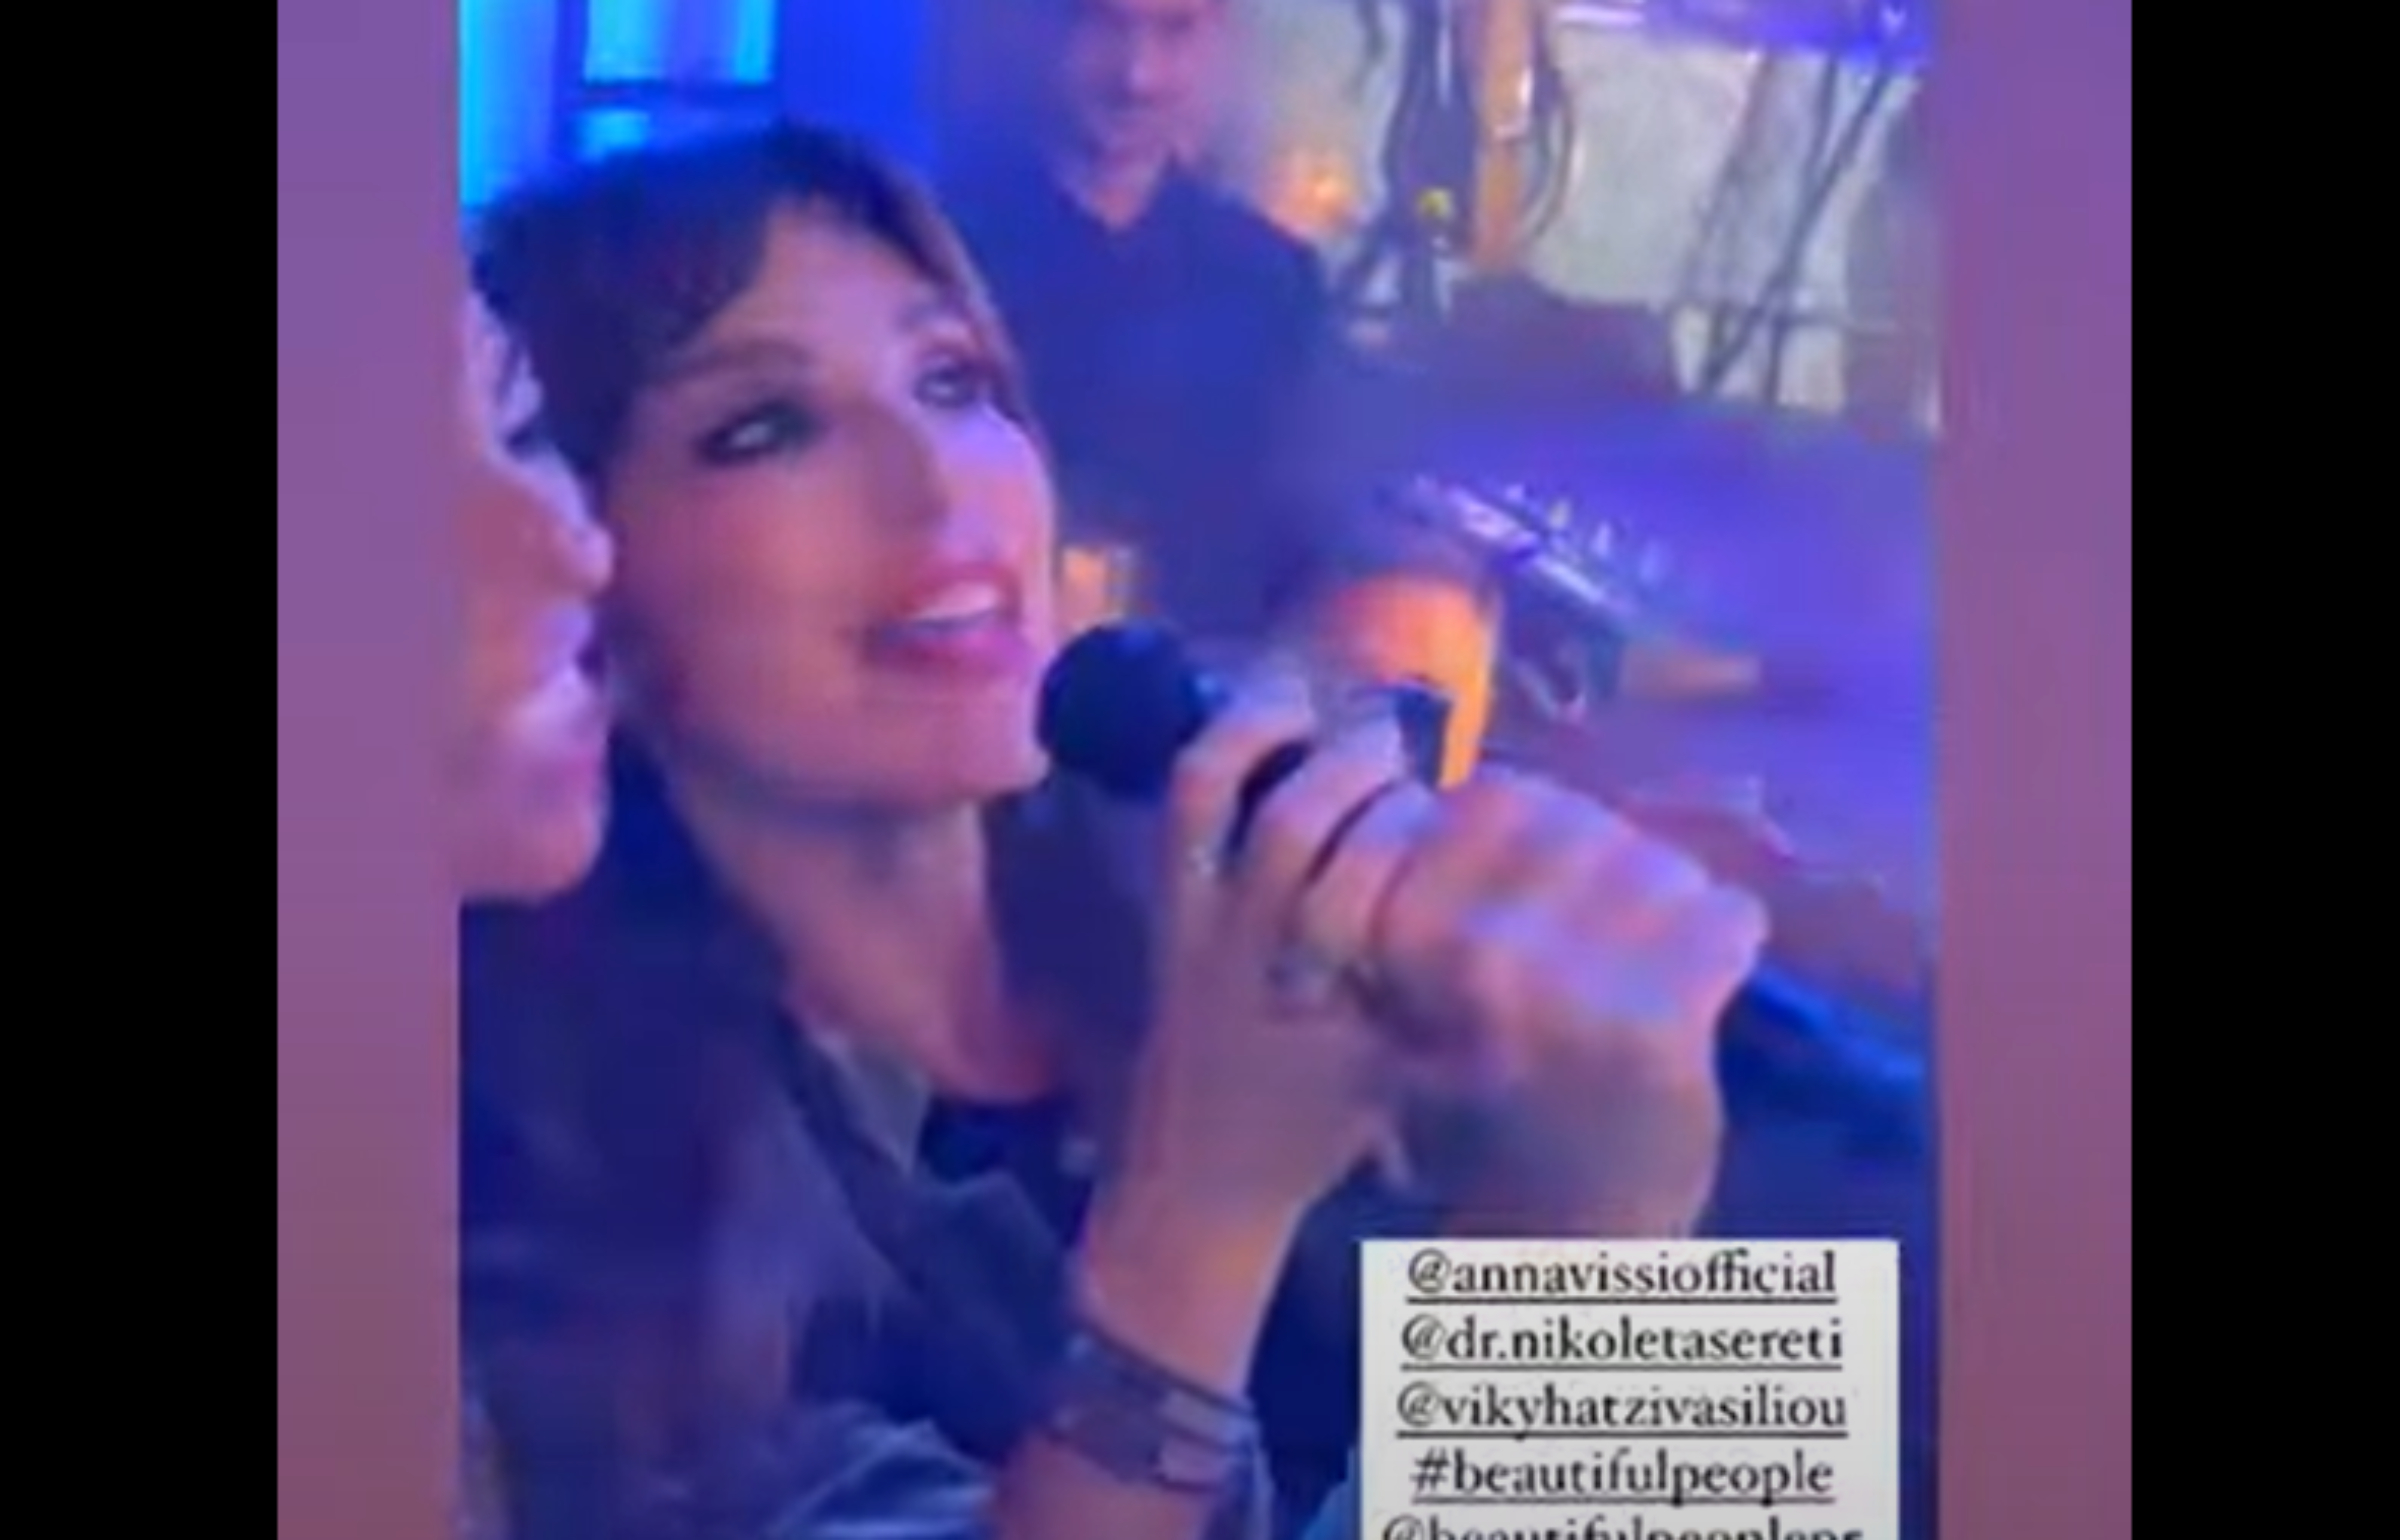 Η Βίκυ Χατζηβασιλείου πρώτο τραπέζι σε συναυλία της Βίσση -Πήρε το μικρόφωνο και τραγούδησε (VIDEO)